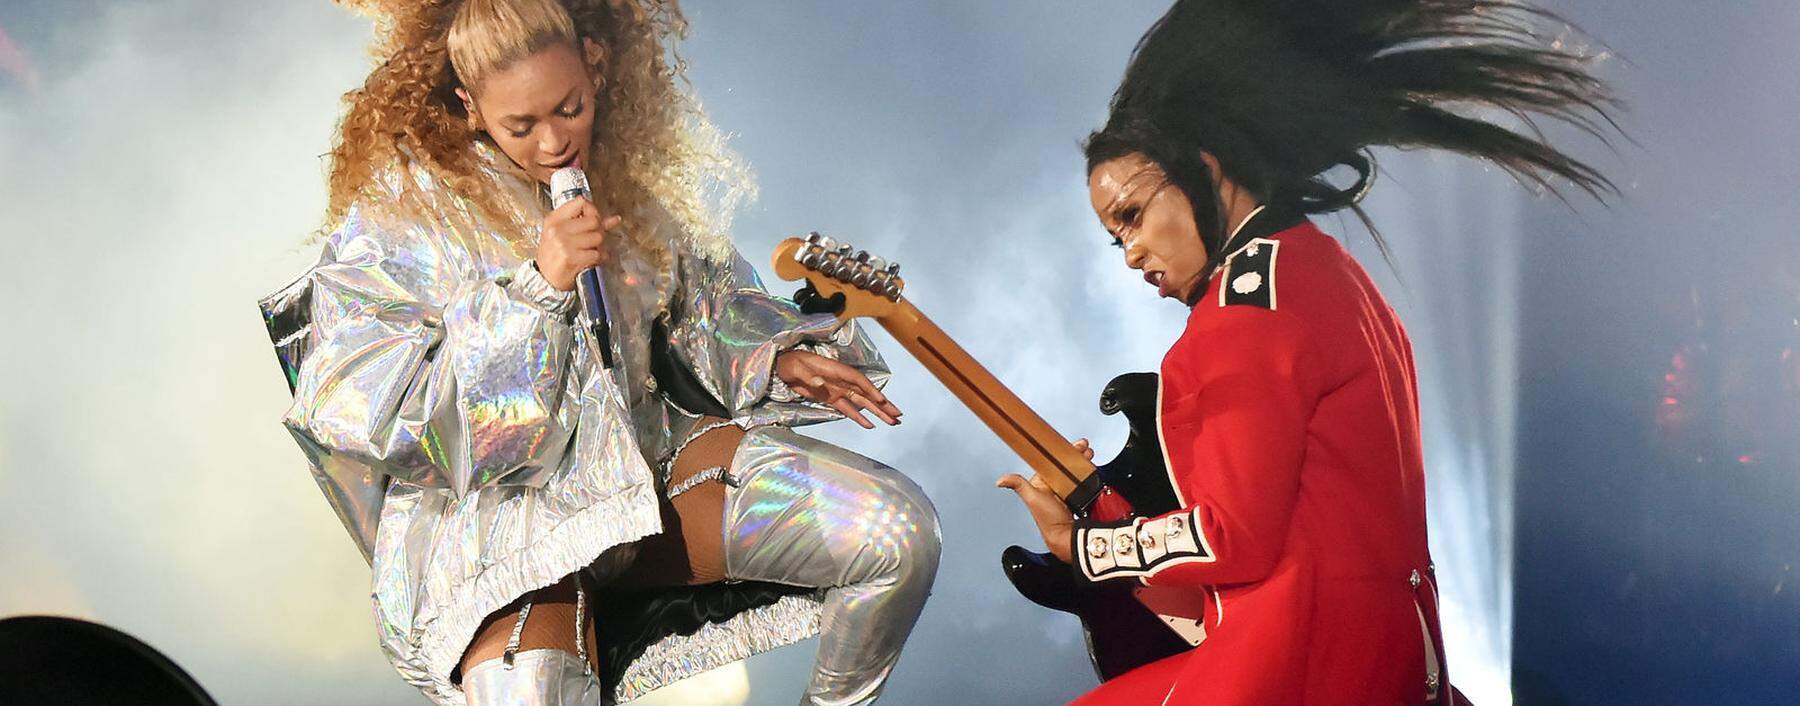 Gitarre als Symbol der Männlichkeit? Auch diese Assoziation ist in den Zehnerjahren verblasst. Geblieben sind (meist unfreiwillige) Saitenwürger- Parodien. Im Bild: Beyoncé, ganz in Weiß, mit ihrer Gitarristin.